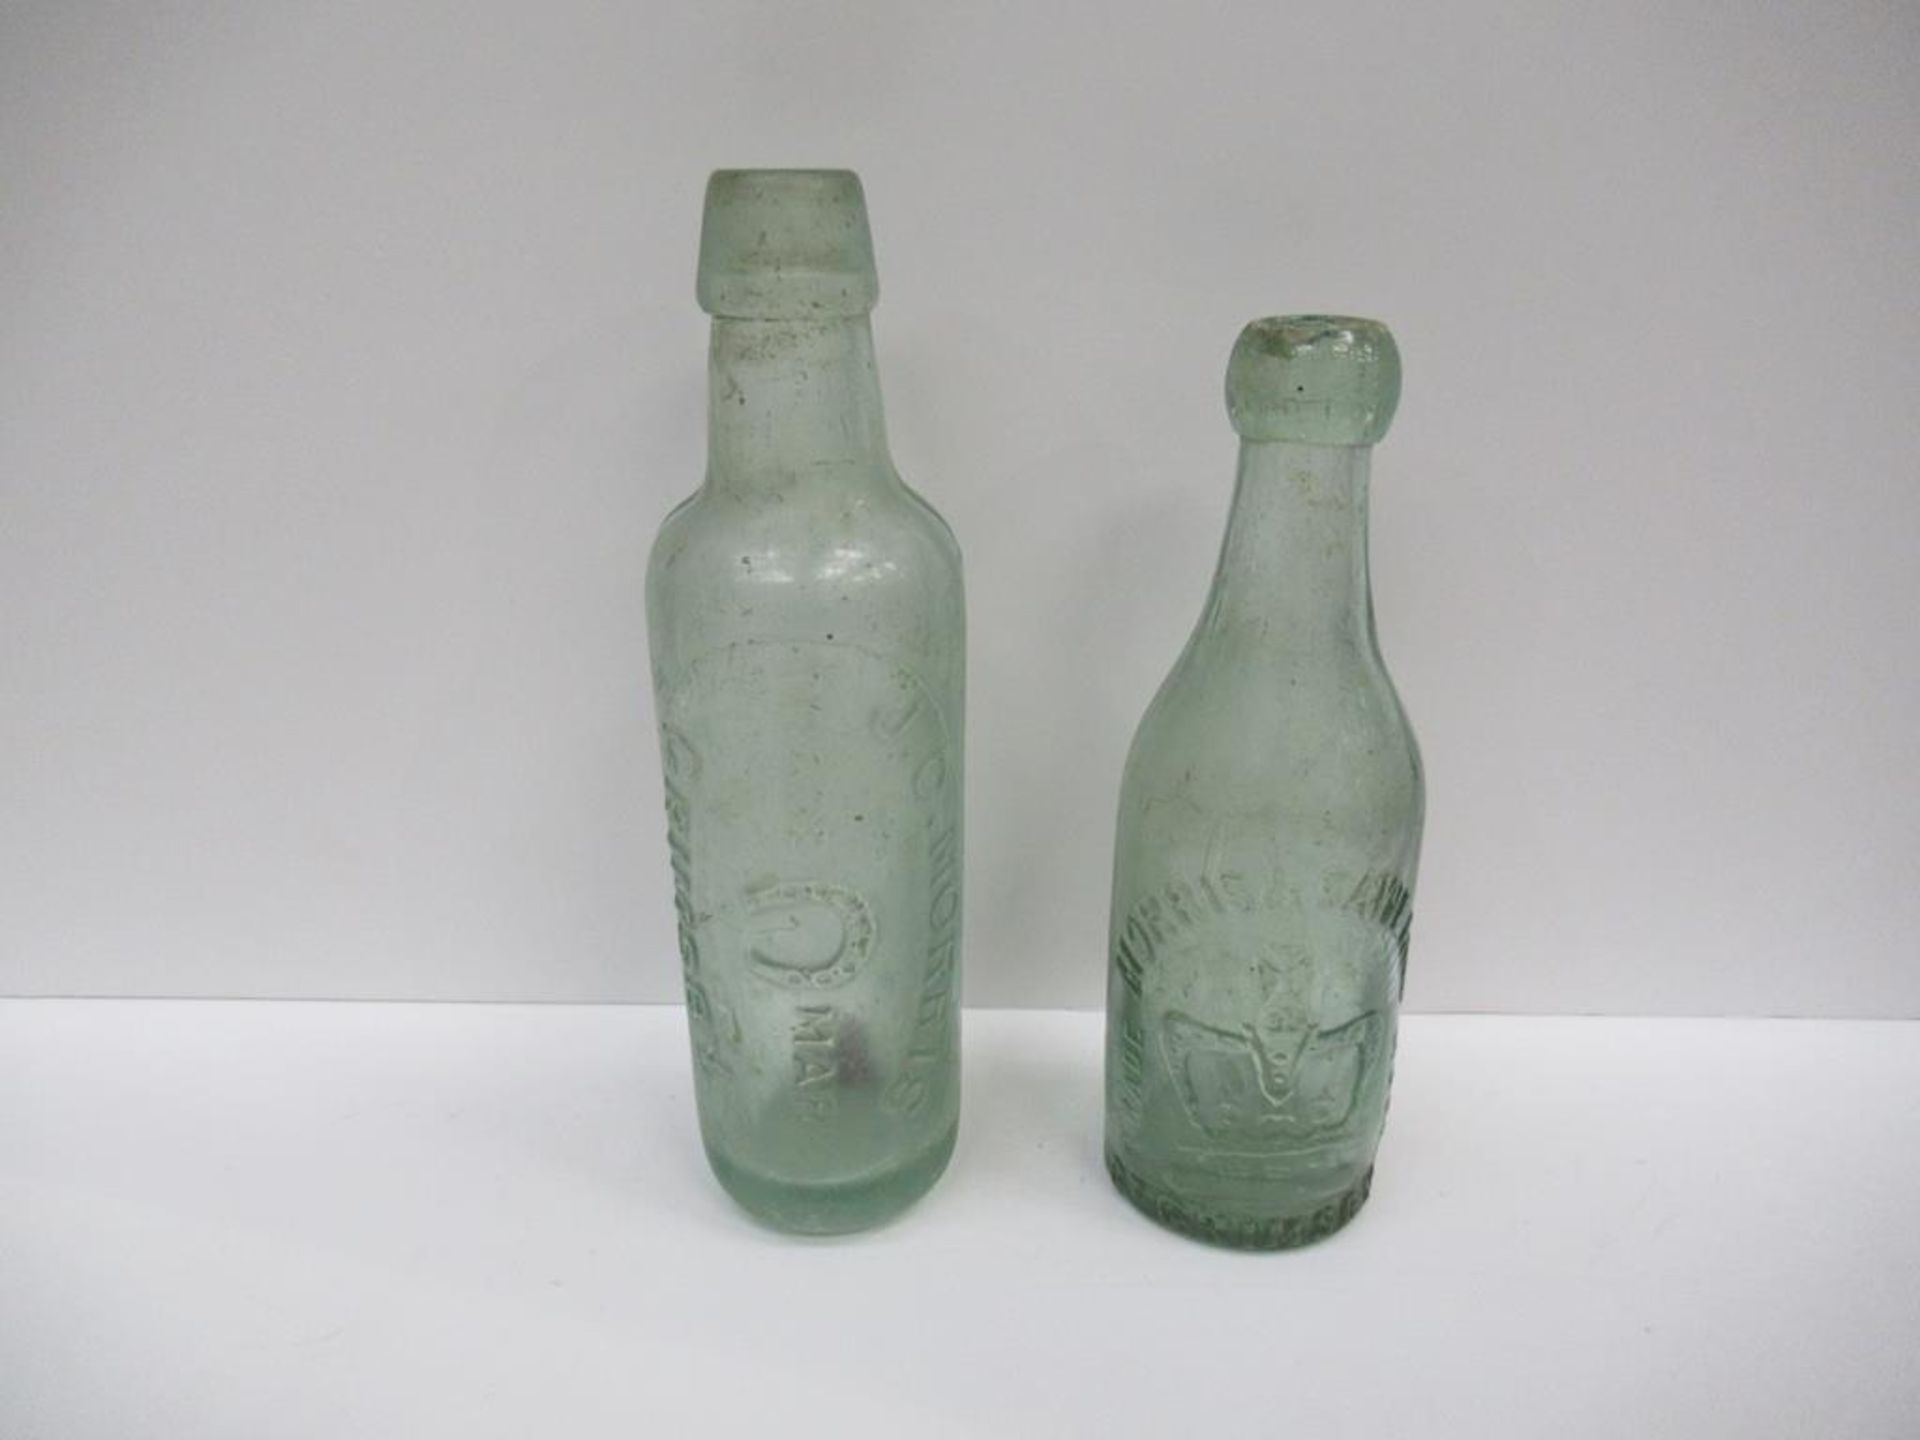 6x Grimsby Morris & Saweard (4) and J.C. Morris (2) bottles - Image 13 of 21